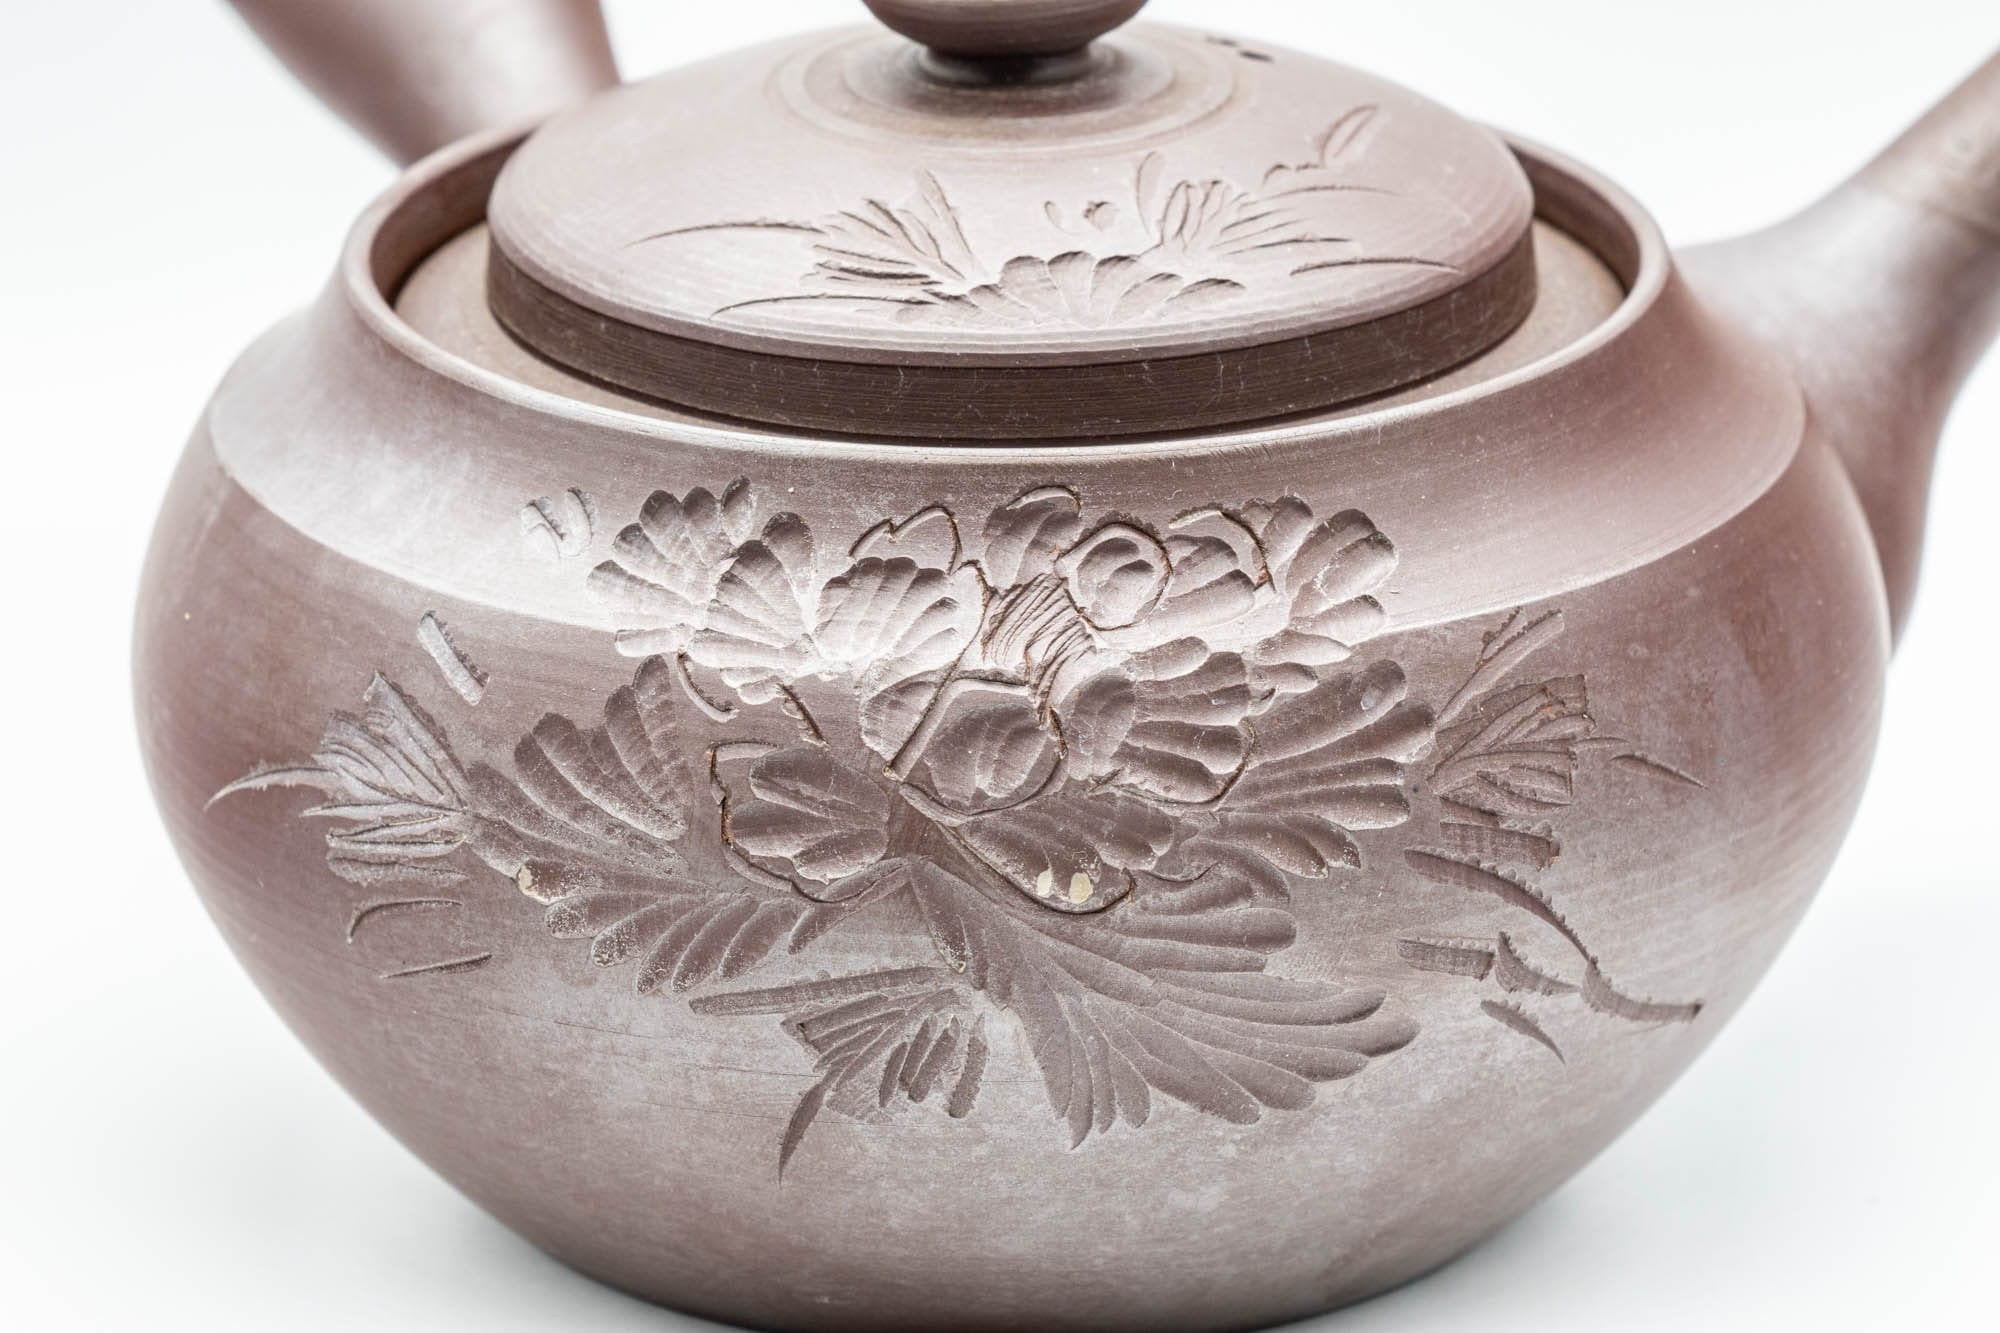 Japanese Kyusu - Large Banko-yaki 萬古焼 Teapot with Floral Motif - 500ml - Tezumi